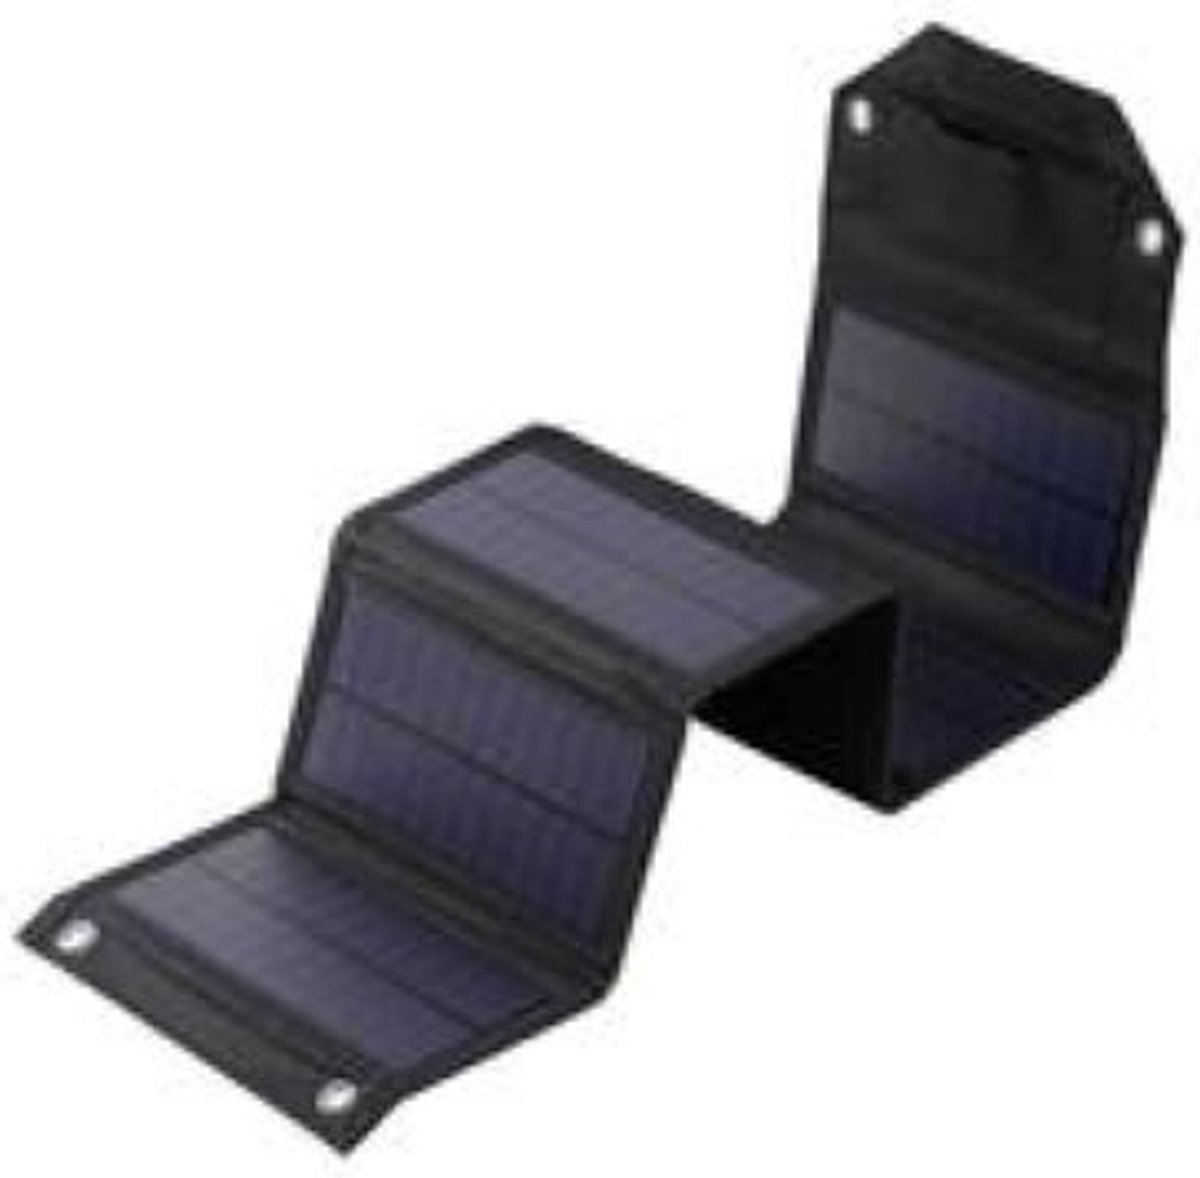 solar world -Opvouwbaar Zonnepaneel – Draagbaar Zonnepaneel – 12 W – 1 USB poort – Geschikt voor mobiele telefoons/camera's/laptops - slechts 0.4 kg - Spatwaterdicht